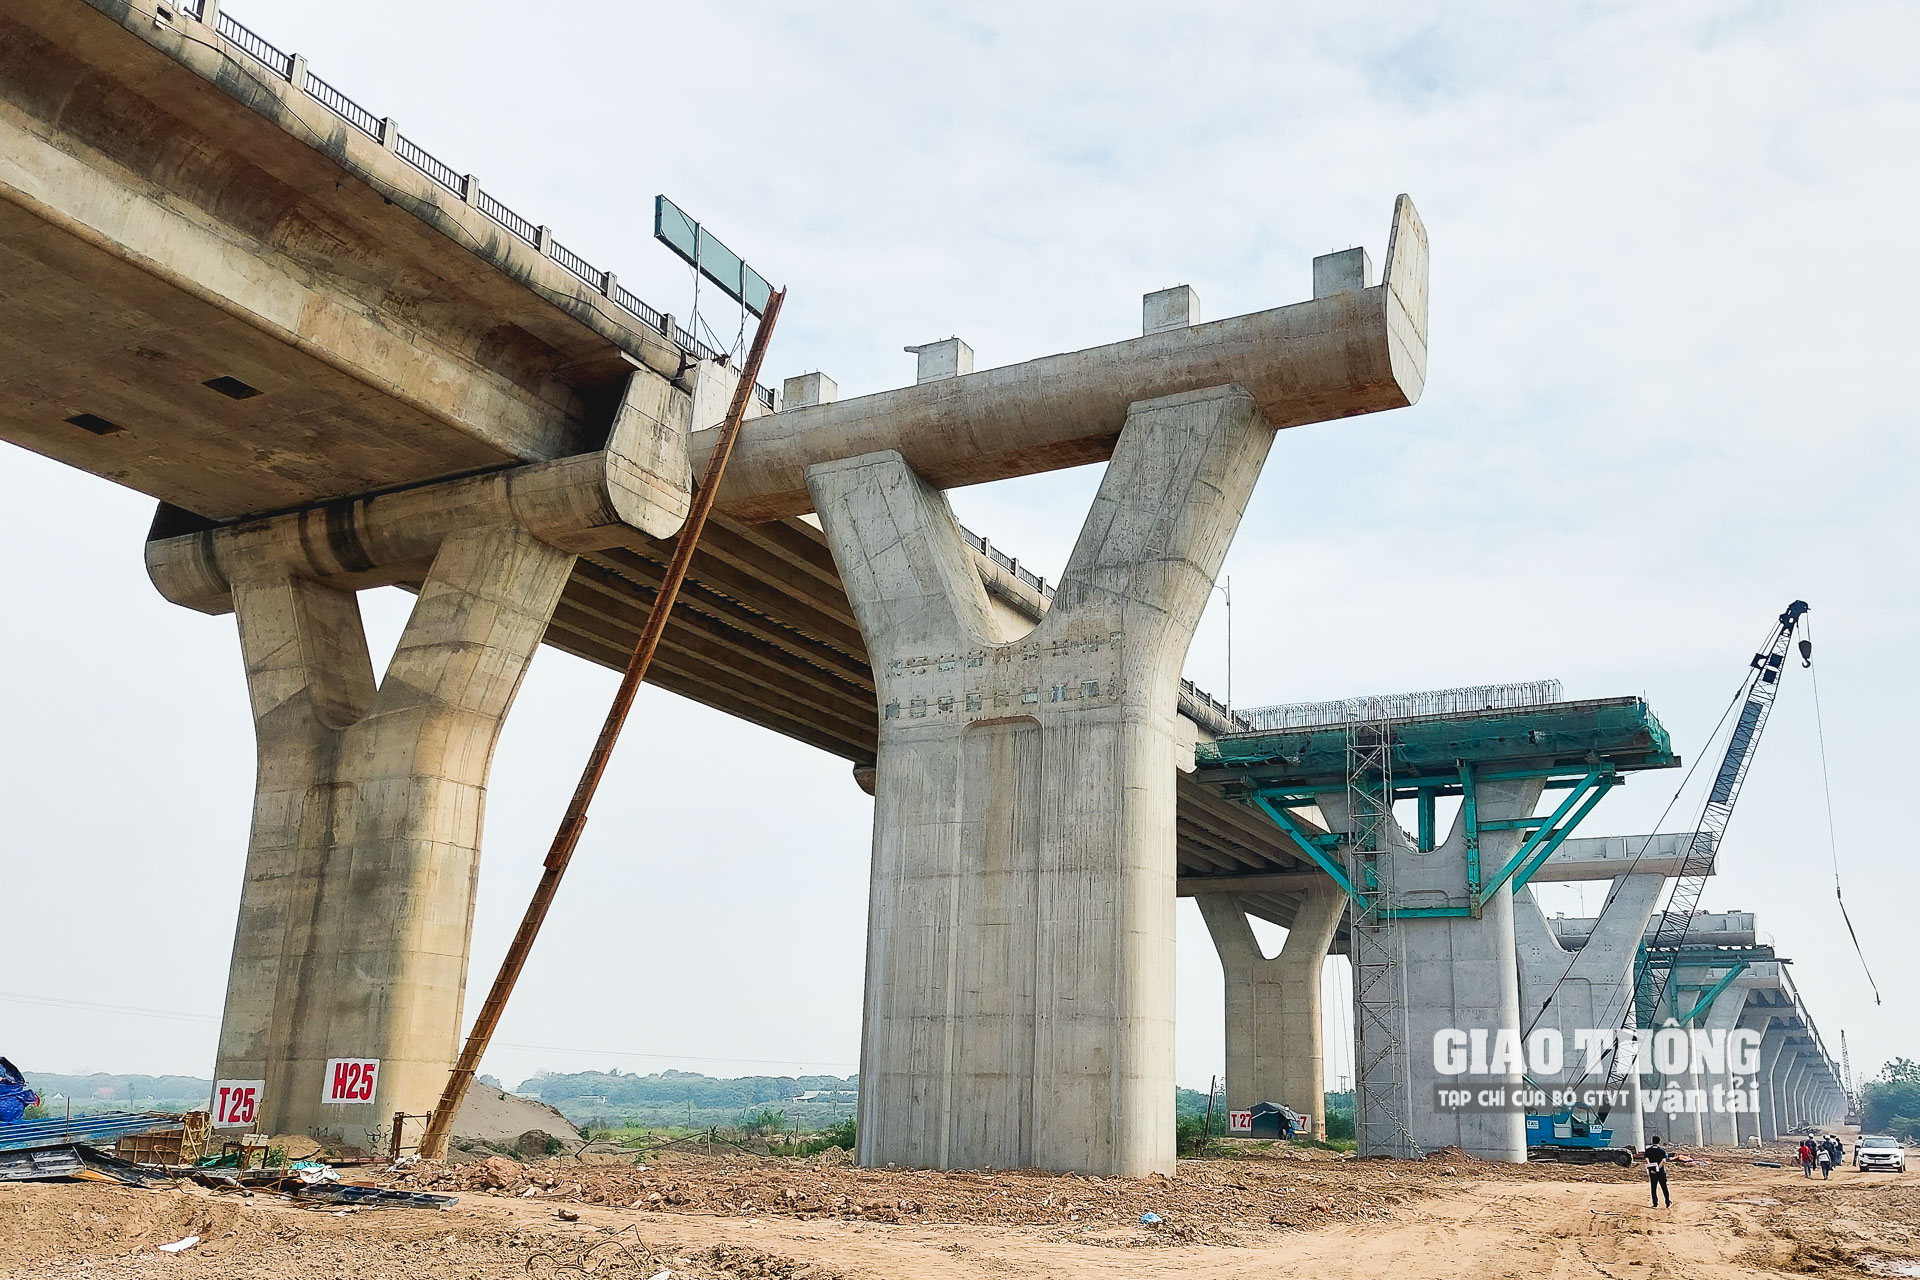 Cầu Vĩnh Tuy 2 có hình dáng tương tự cầu Vĩnh Tuy 1. Dự án xây dựng cầu Vĩnh Tuy 2 có tổng chiều dài và đường dẫn hơn 3,4km, mặt cắt ngang 19,25m (4 làn xe), chiều cao tĩnh không 11m.